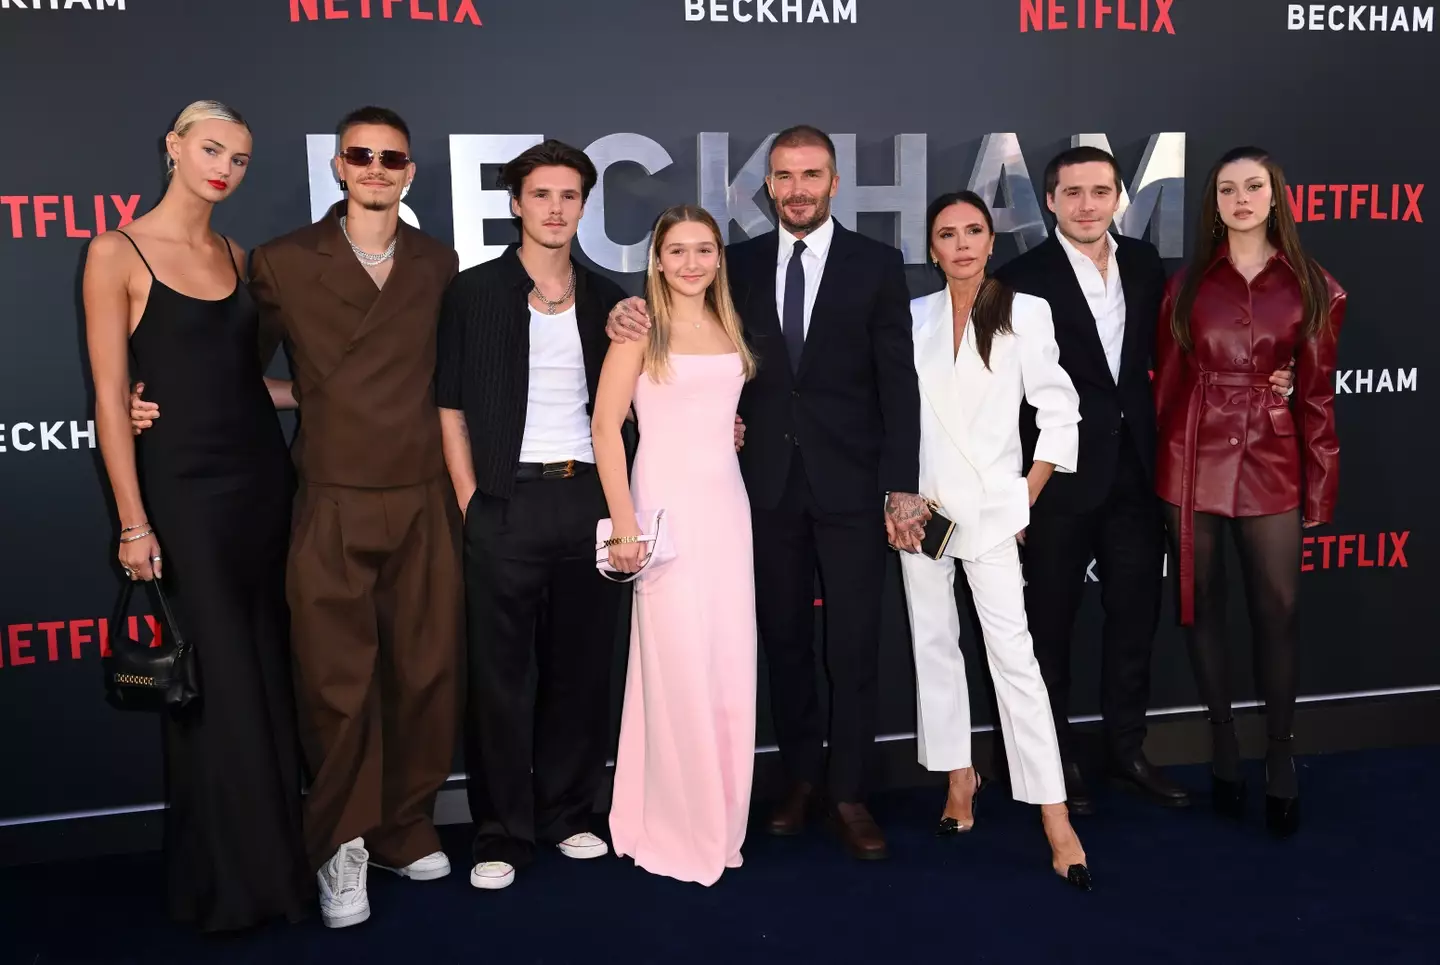 Mia Regan, Romeo Beckham, Cruz Beckham, Harper Beckham, David Beckham, Victoria Beckham, Brooklyn Beckham and Nicola Peltz attend the Netflix 'Beckham' UK Premiere.